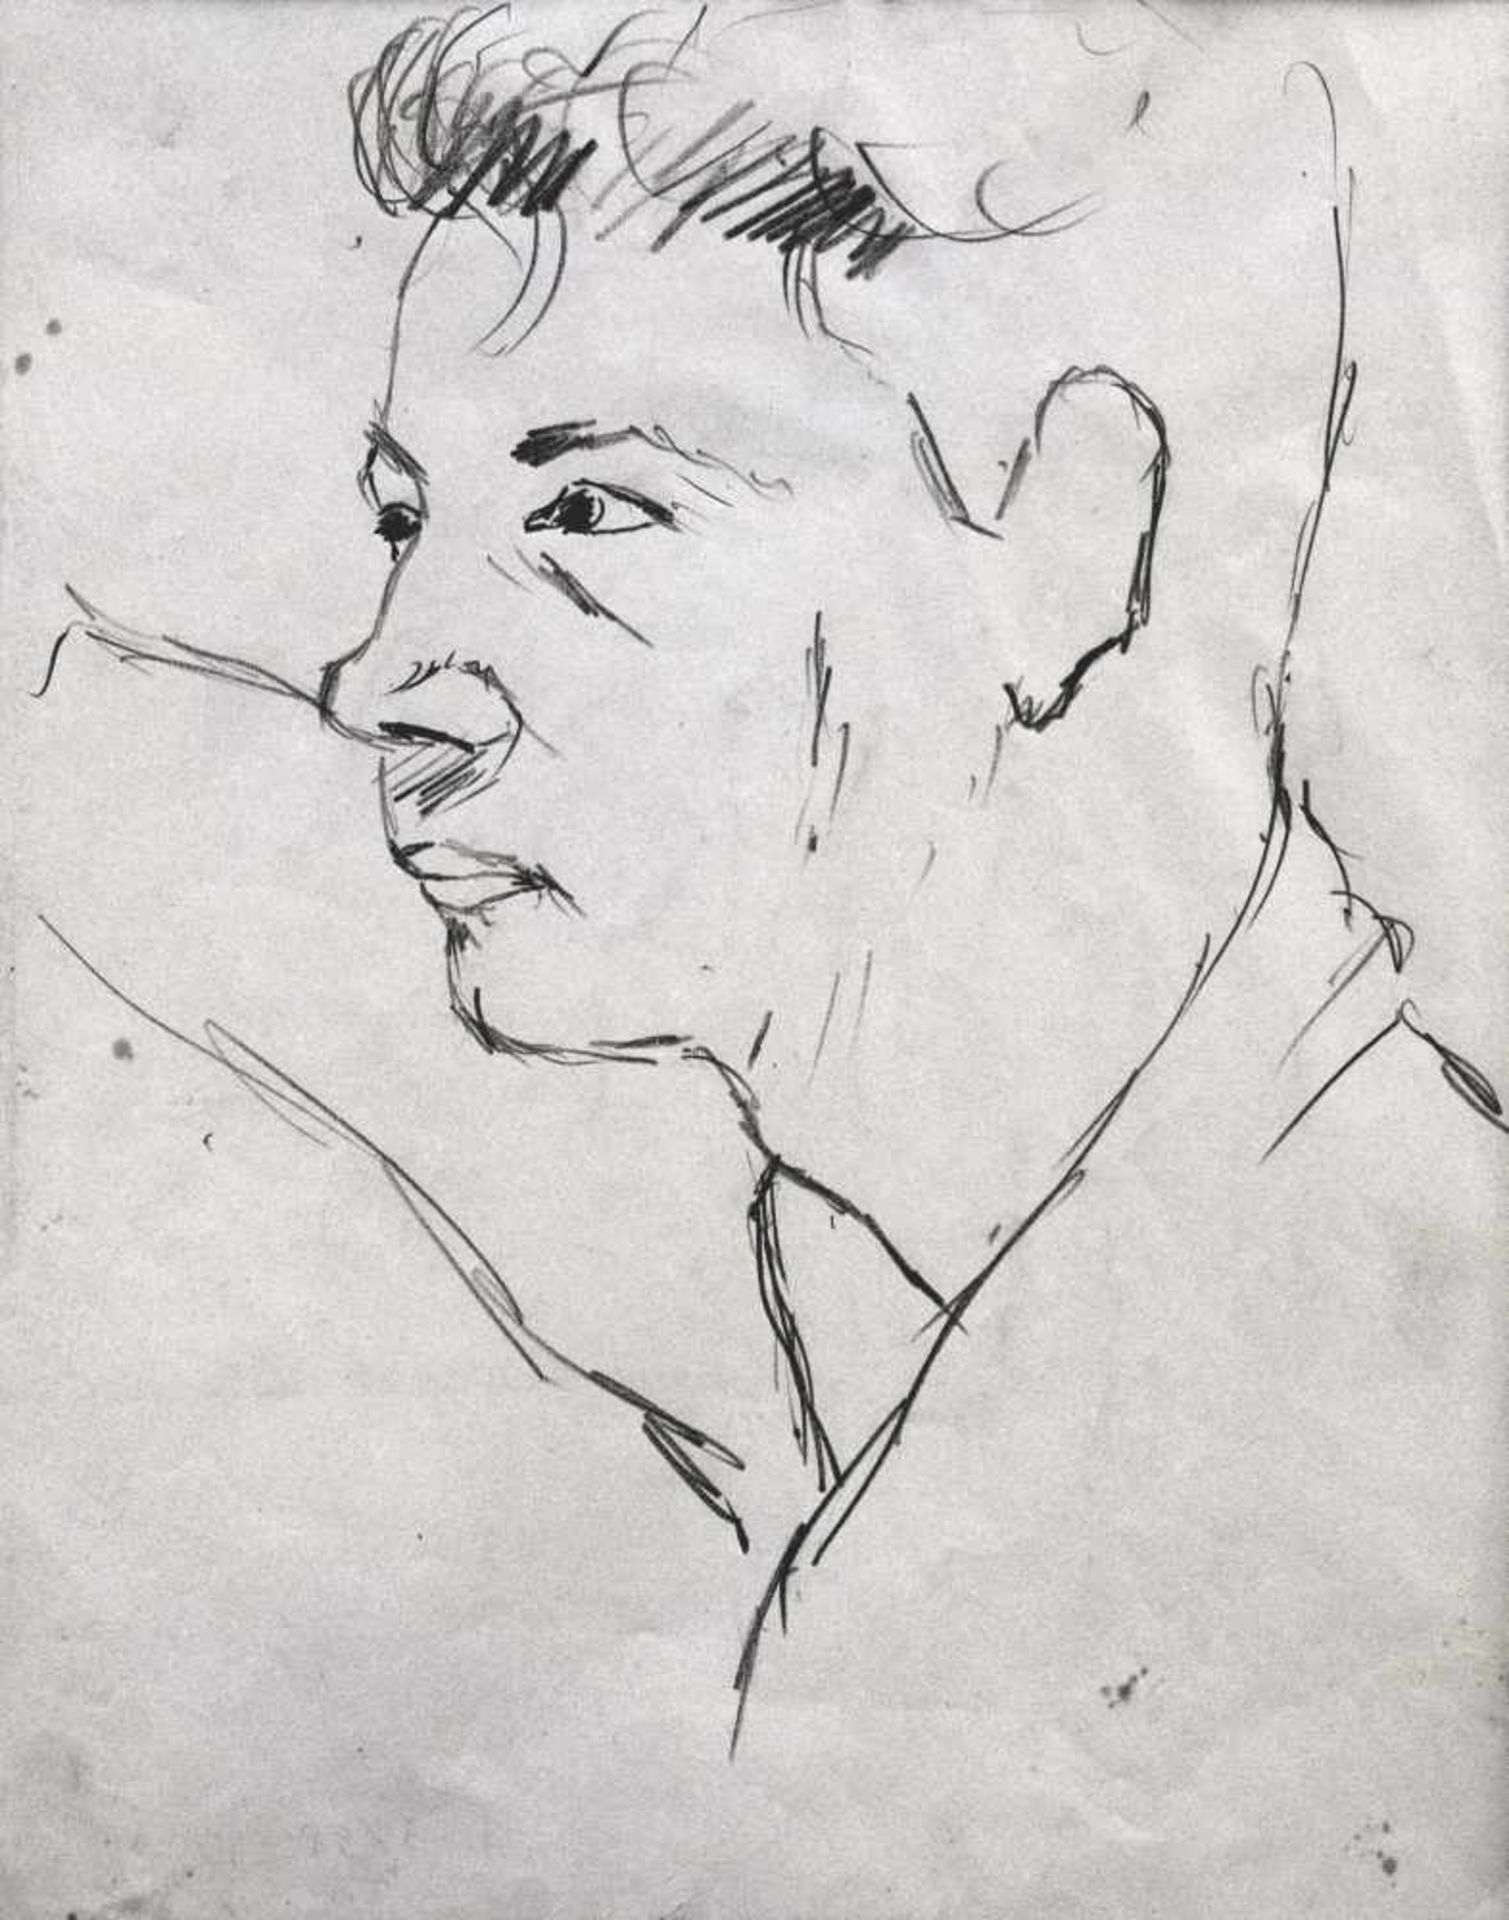 Ottone Rosai (Florenz/Firenze 1895  Ivrea 1957)Knabenkopf, 1953;Bleistiftzeichnung auf Papier, 33,5